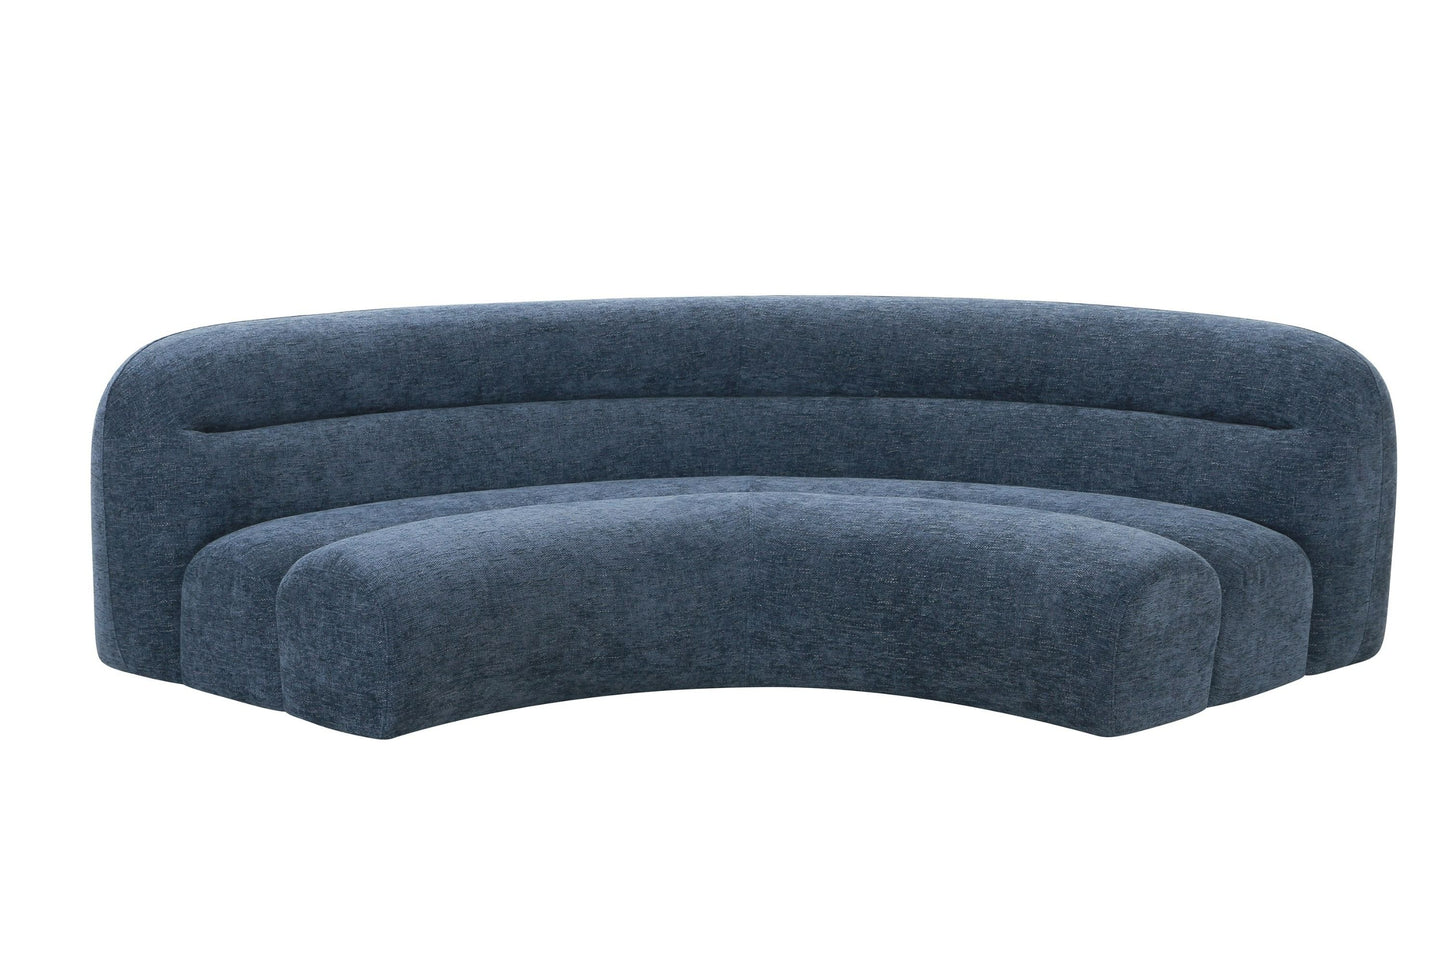 Divani Casa Forman - Modern Blue Fabric Modular Sectional Sofa